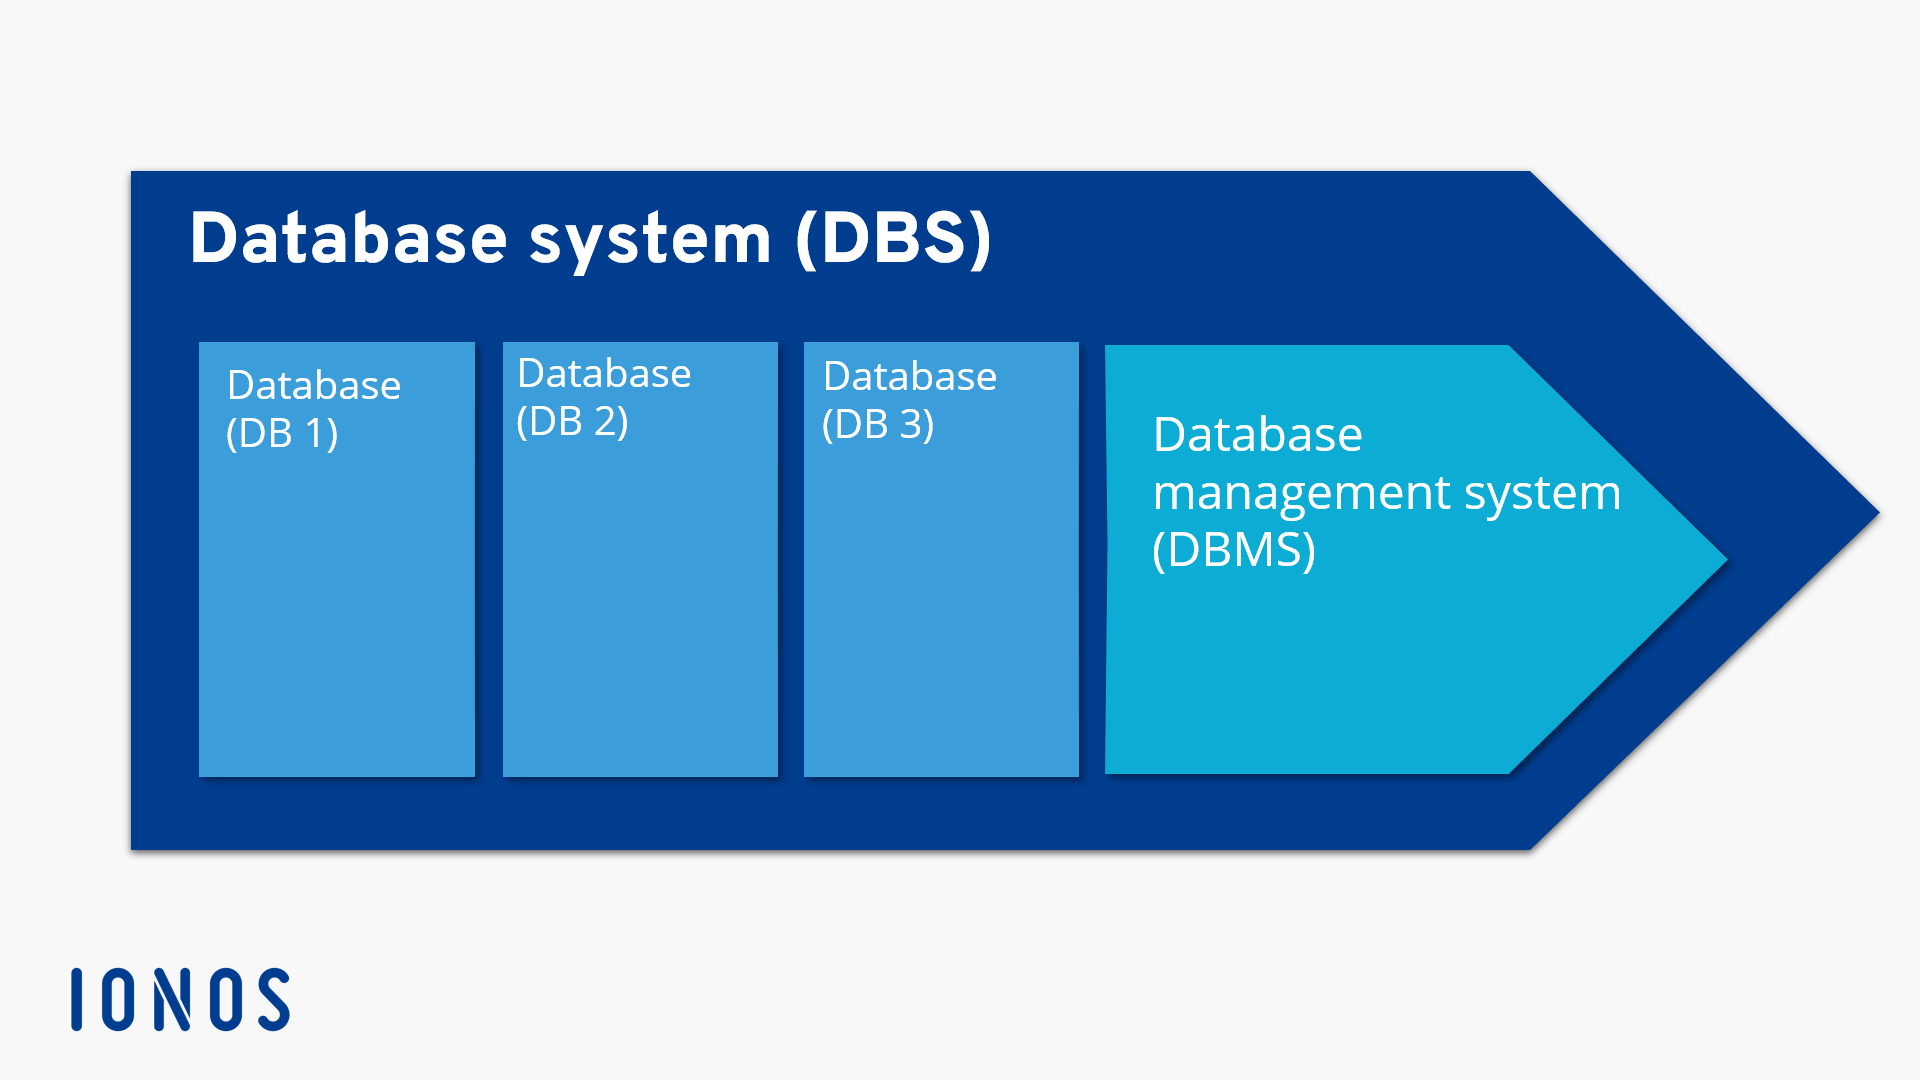 Rappresentazione schematica di un sistema di database (DBS) con tre database